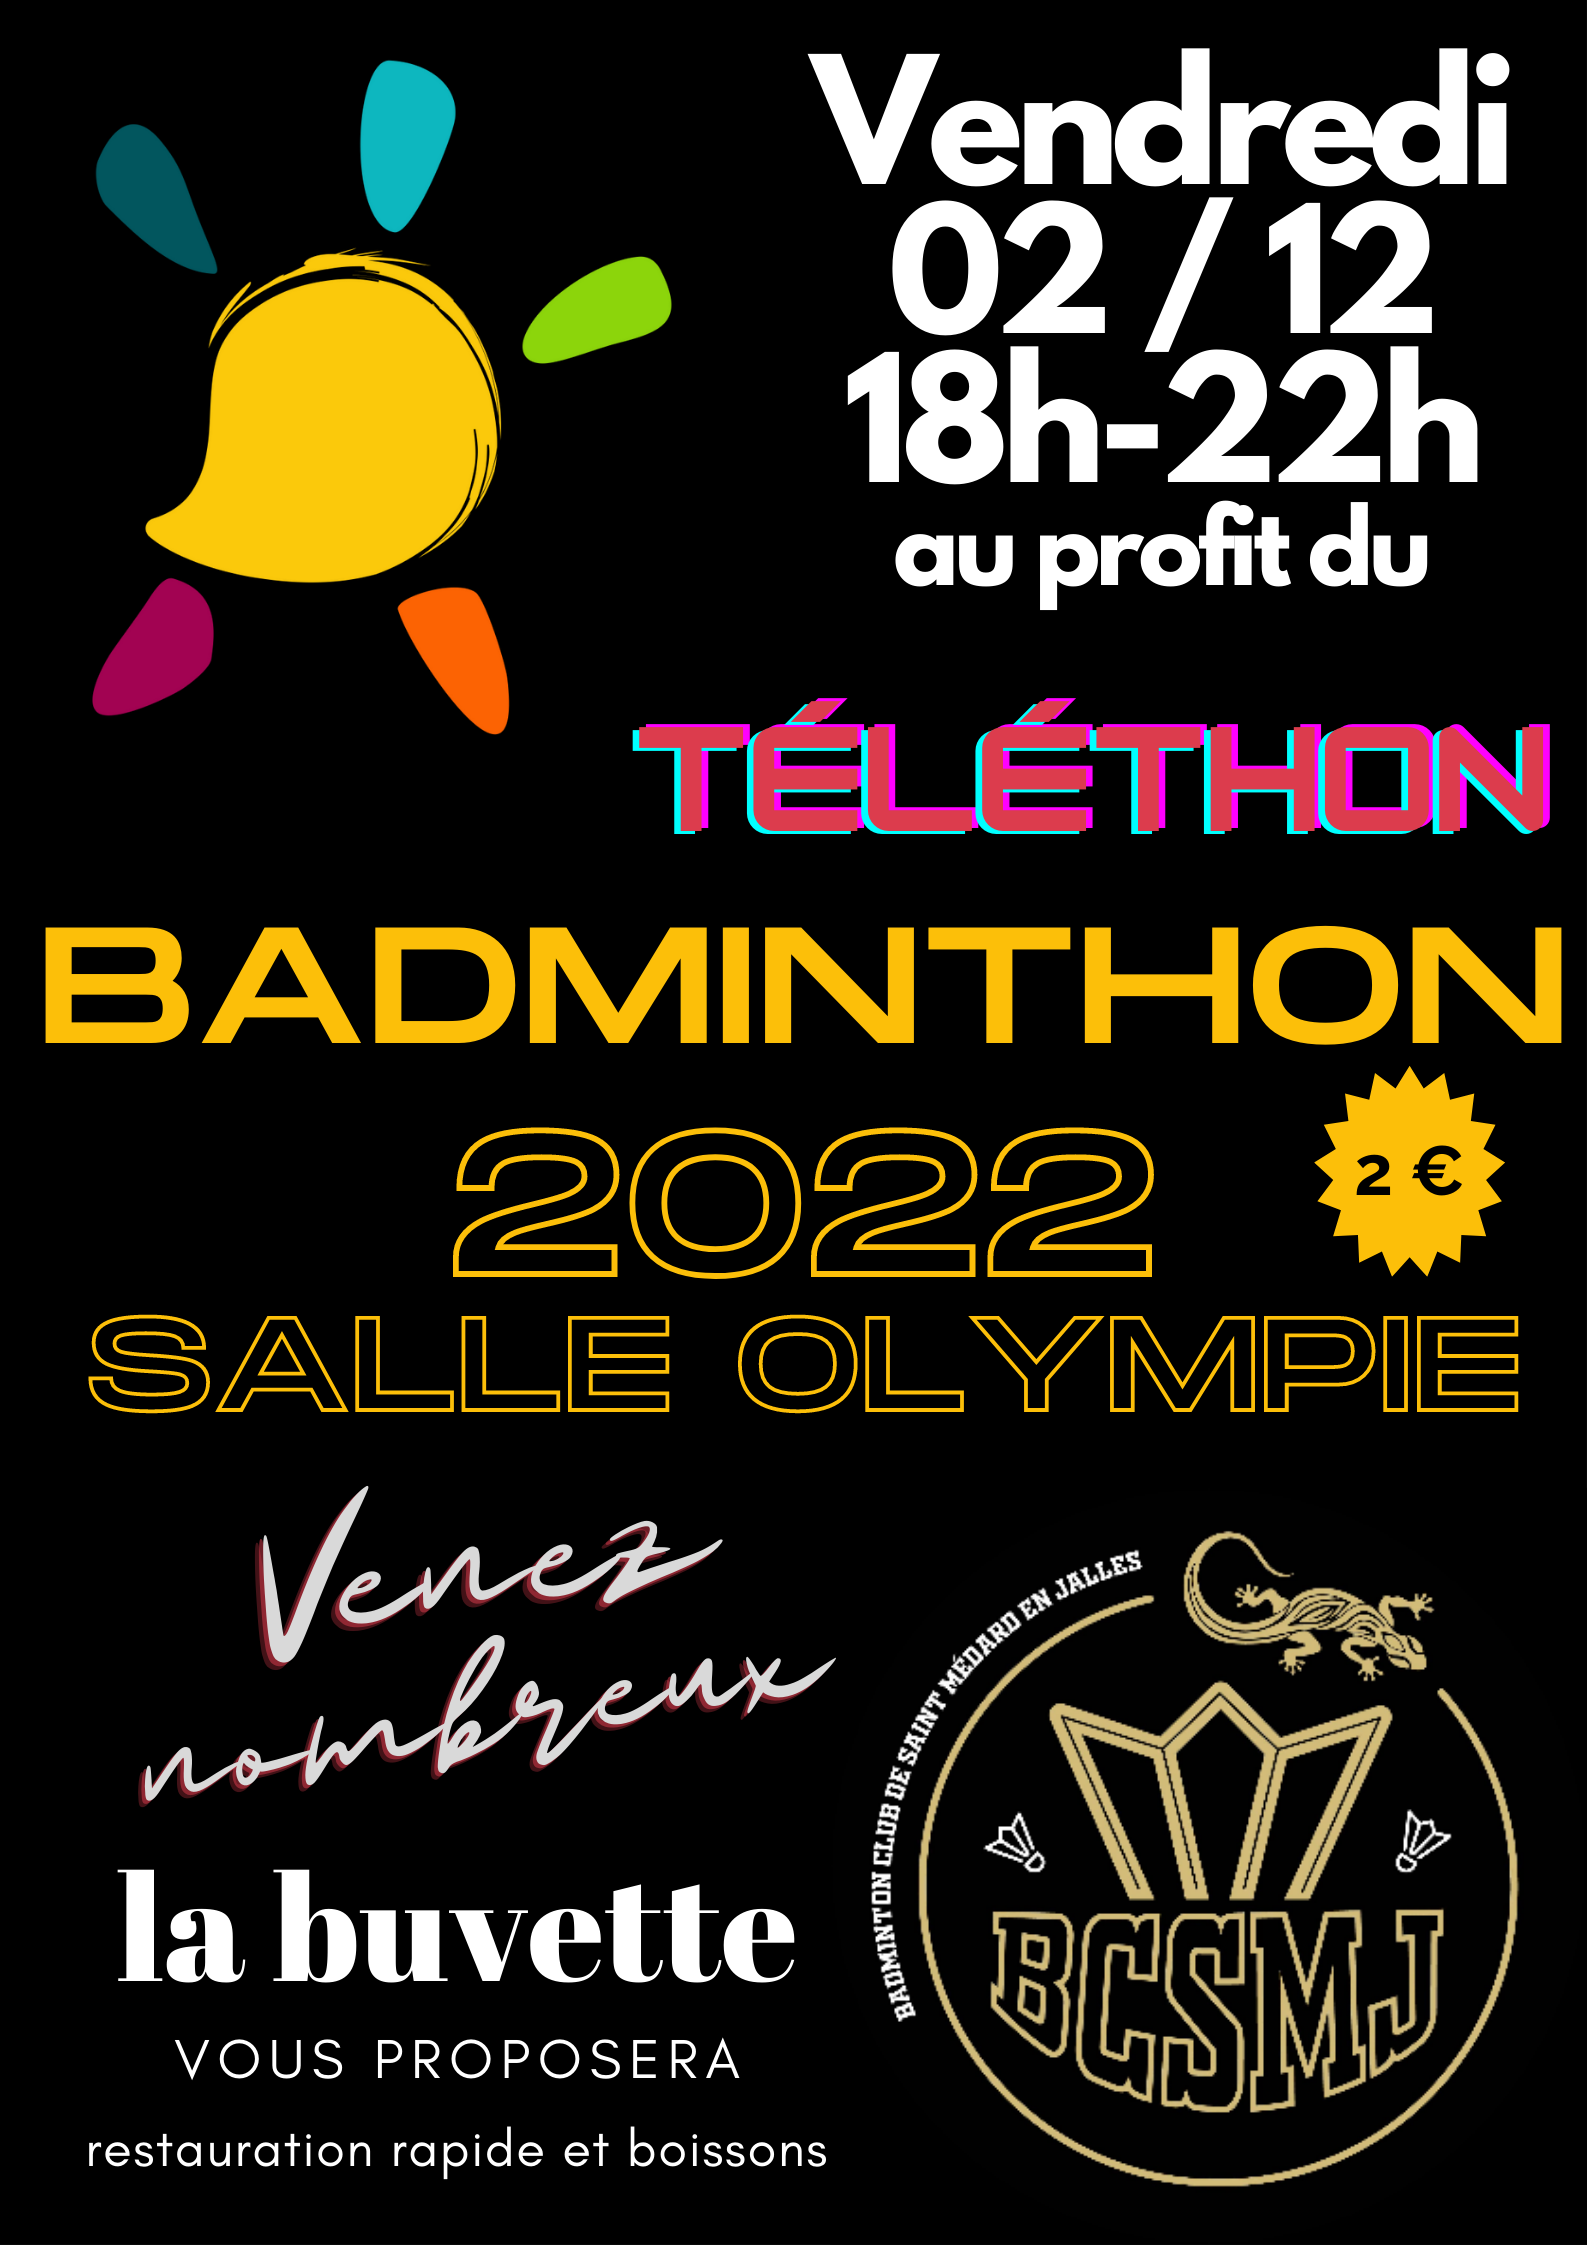 Badminton téléthon 2 dec 2022